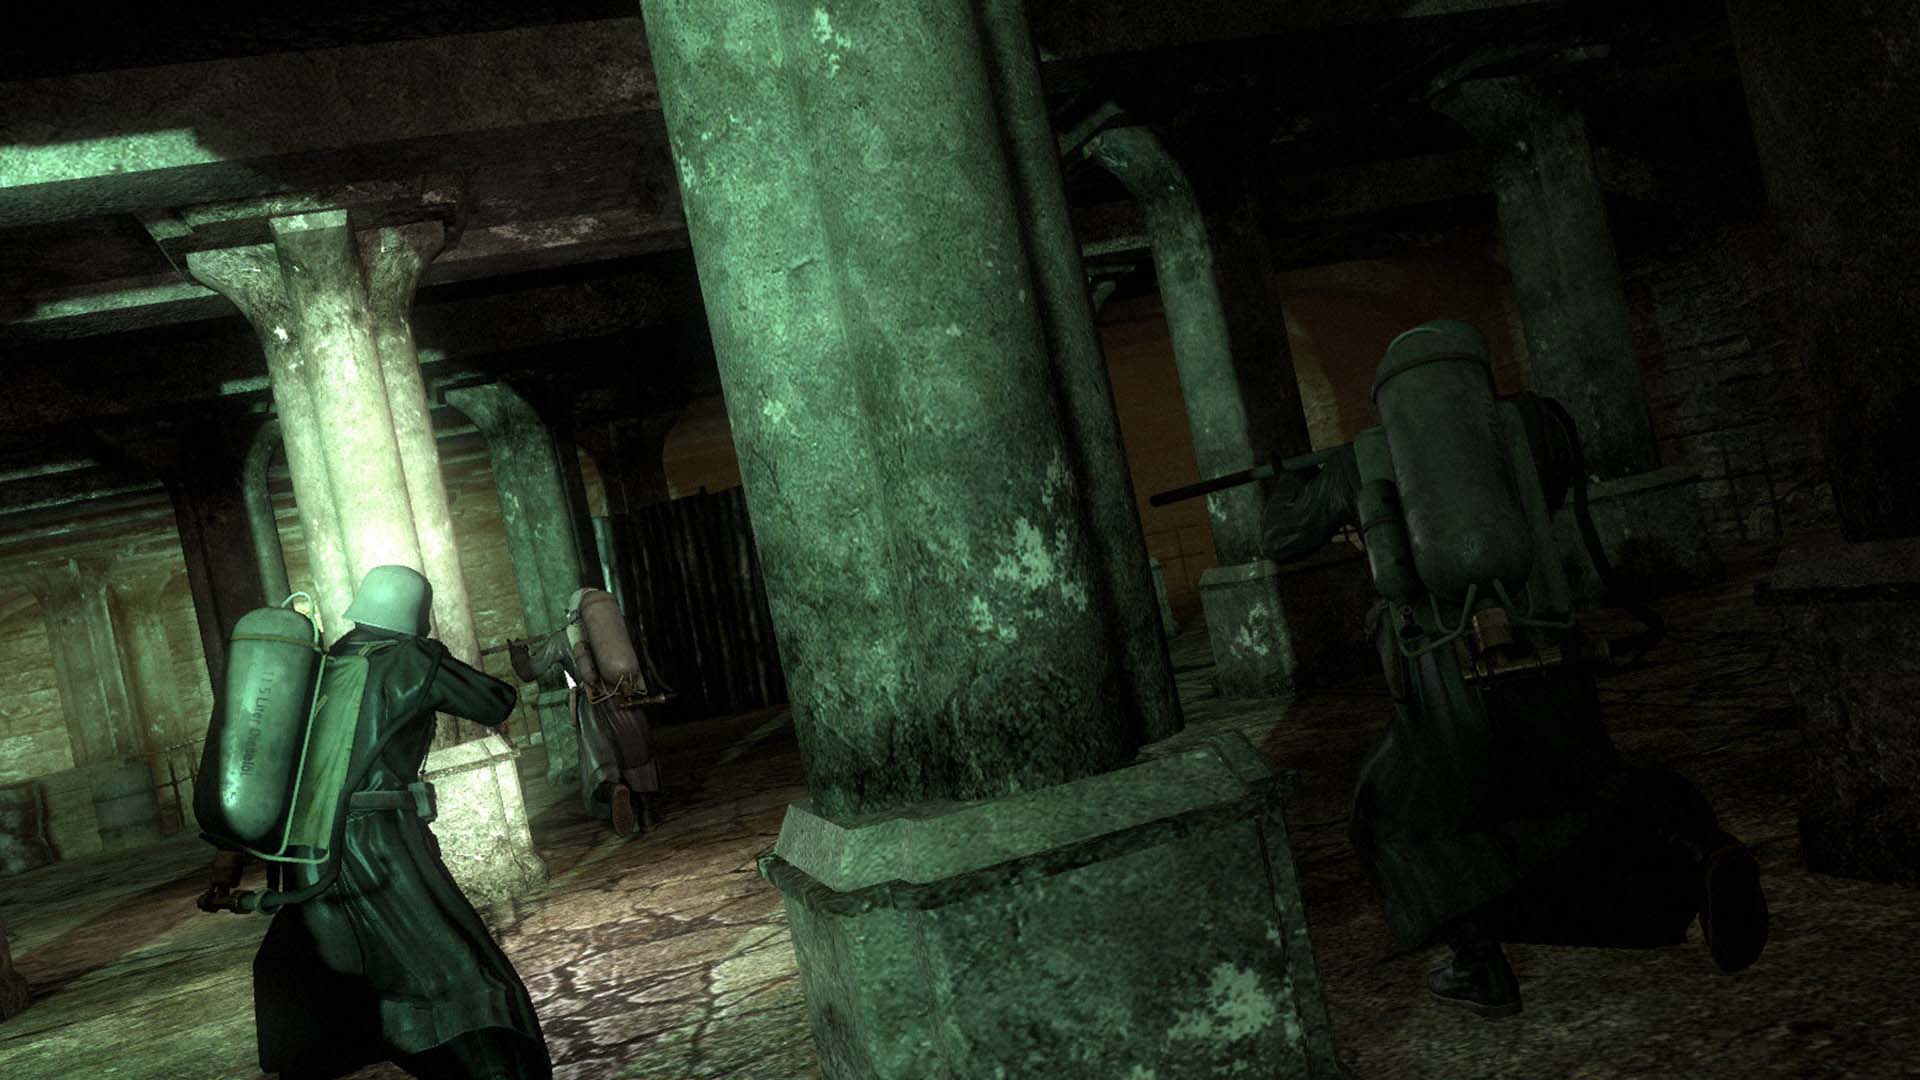 Скриншот Velvet Assassin (2009) PC